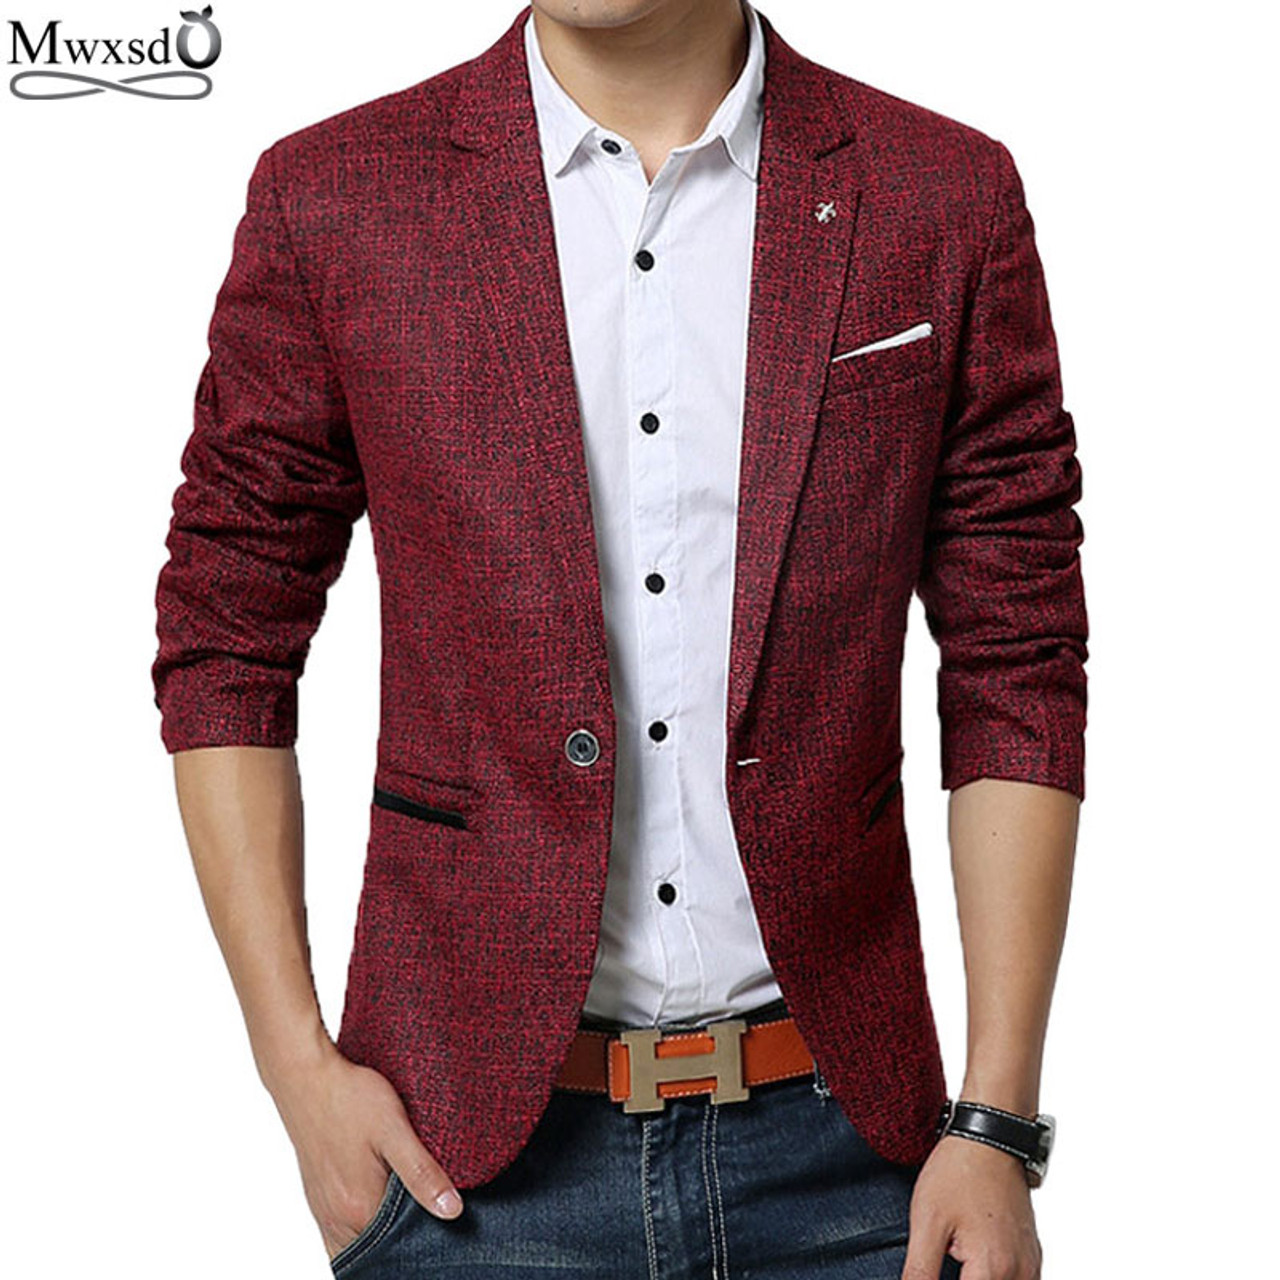 Mwxsd brand spring autumn men casual Blazer suit mens cotton suit ...